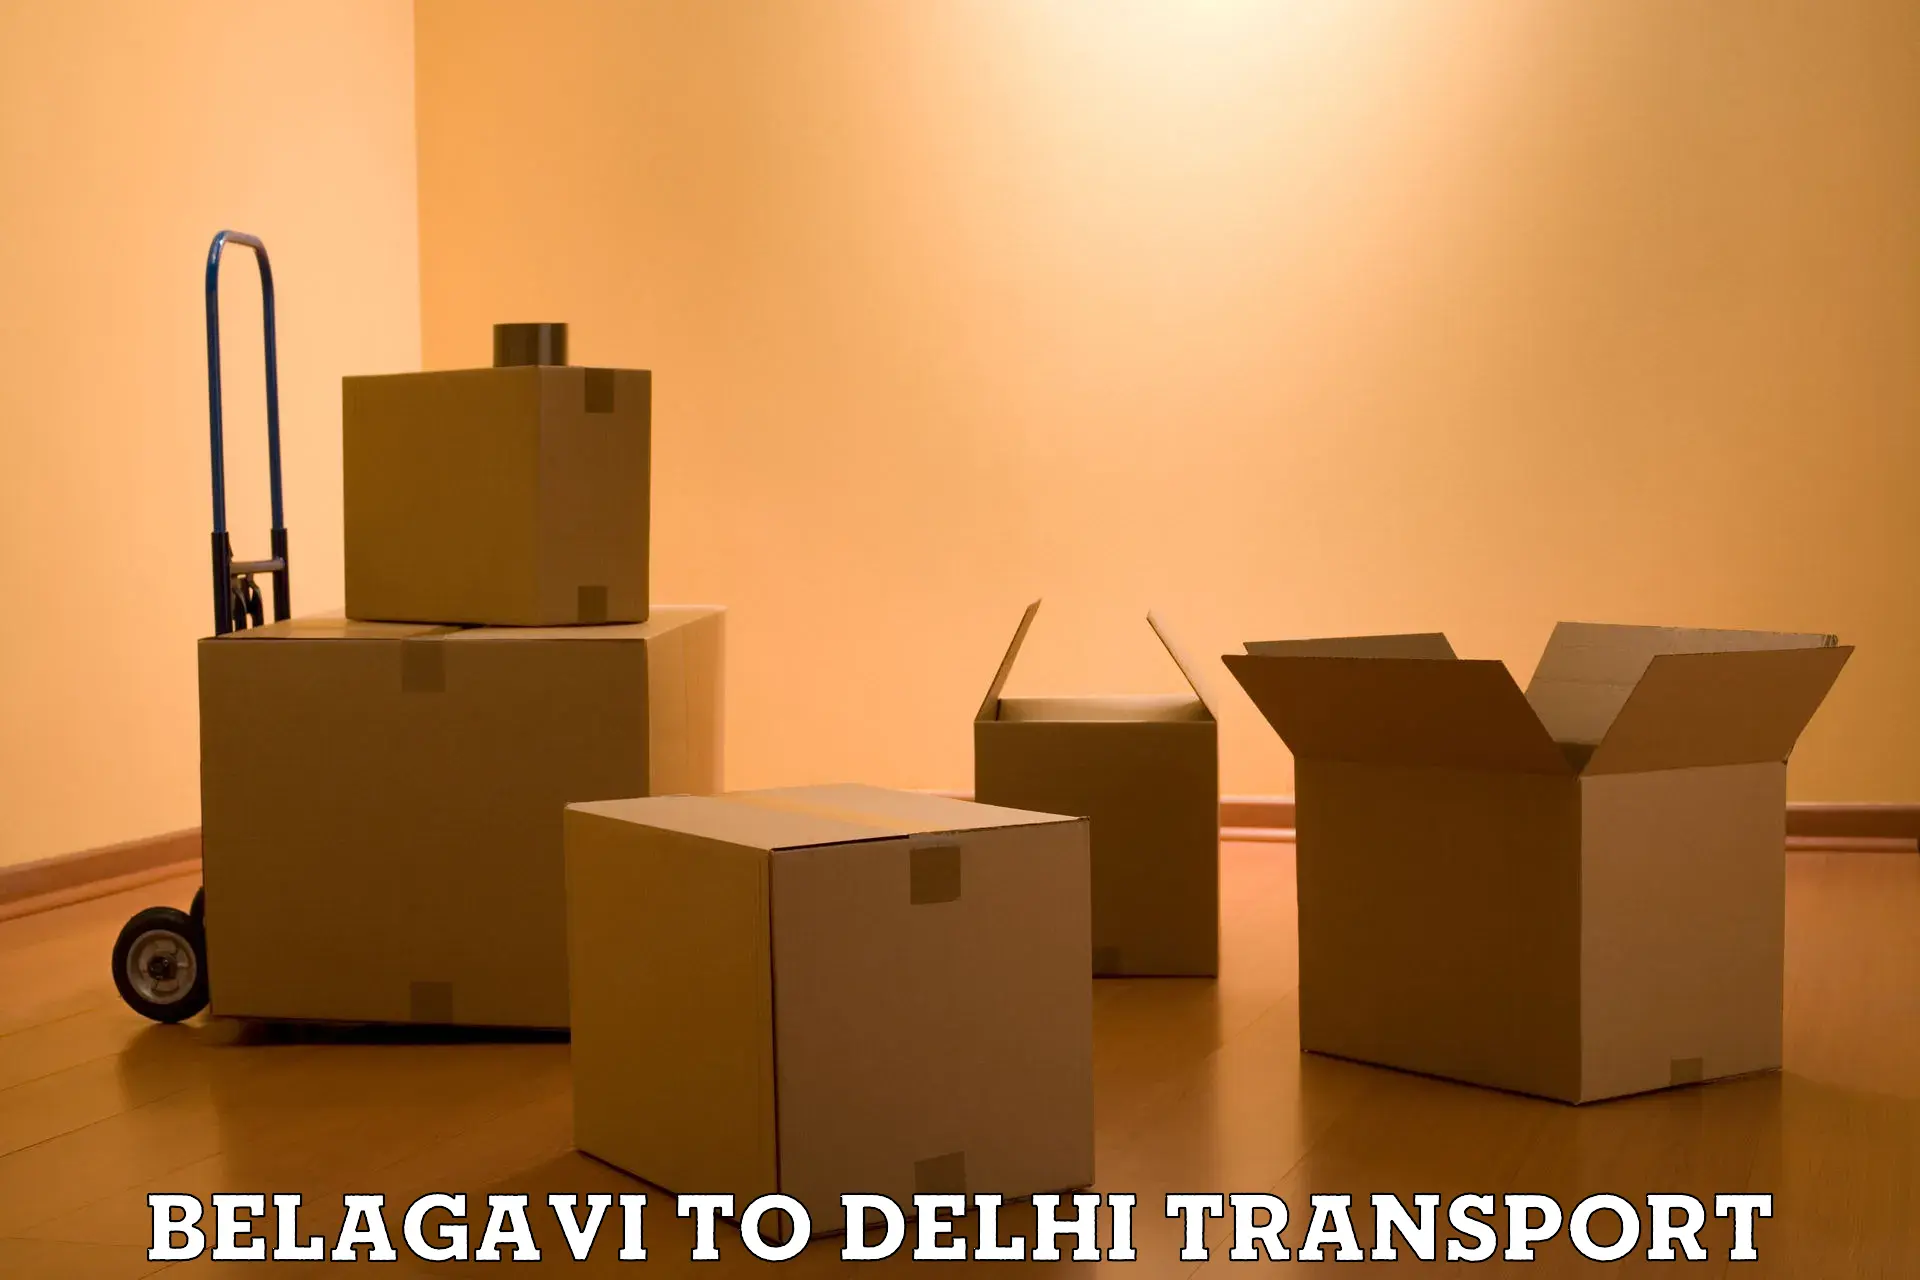 Online transport service Belagavi to Delhi Technological University DTU